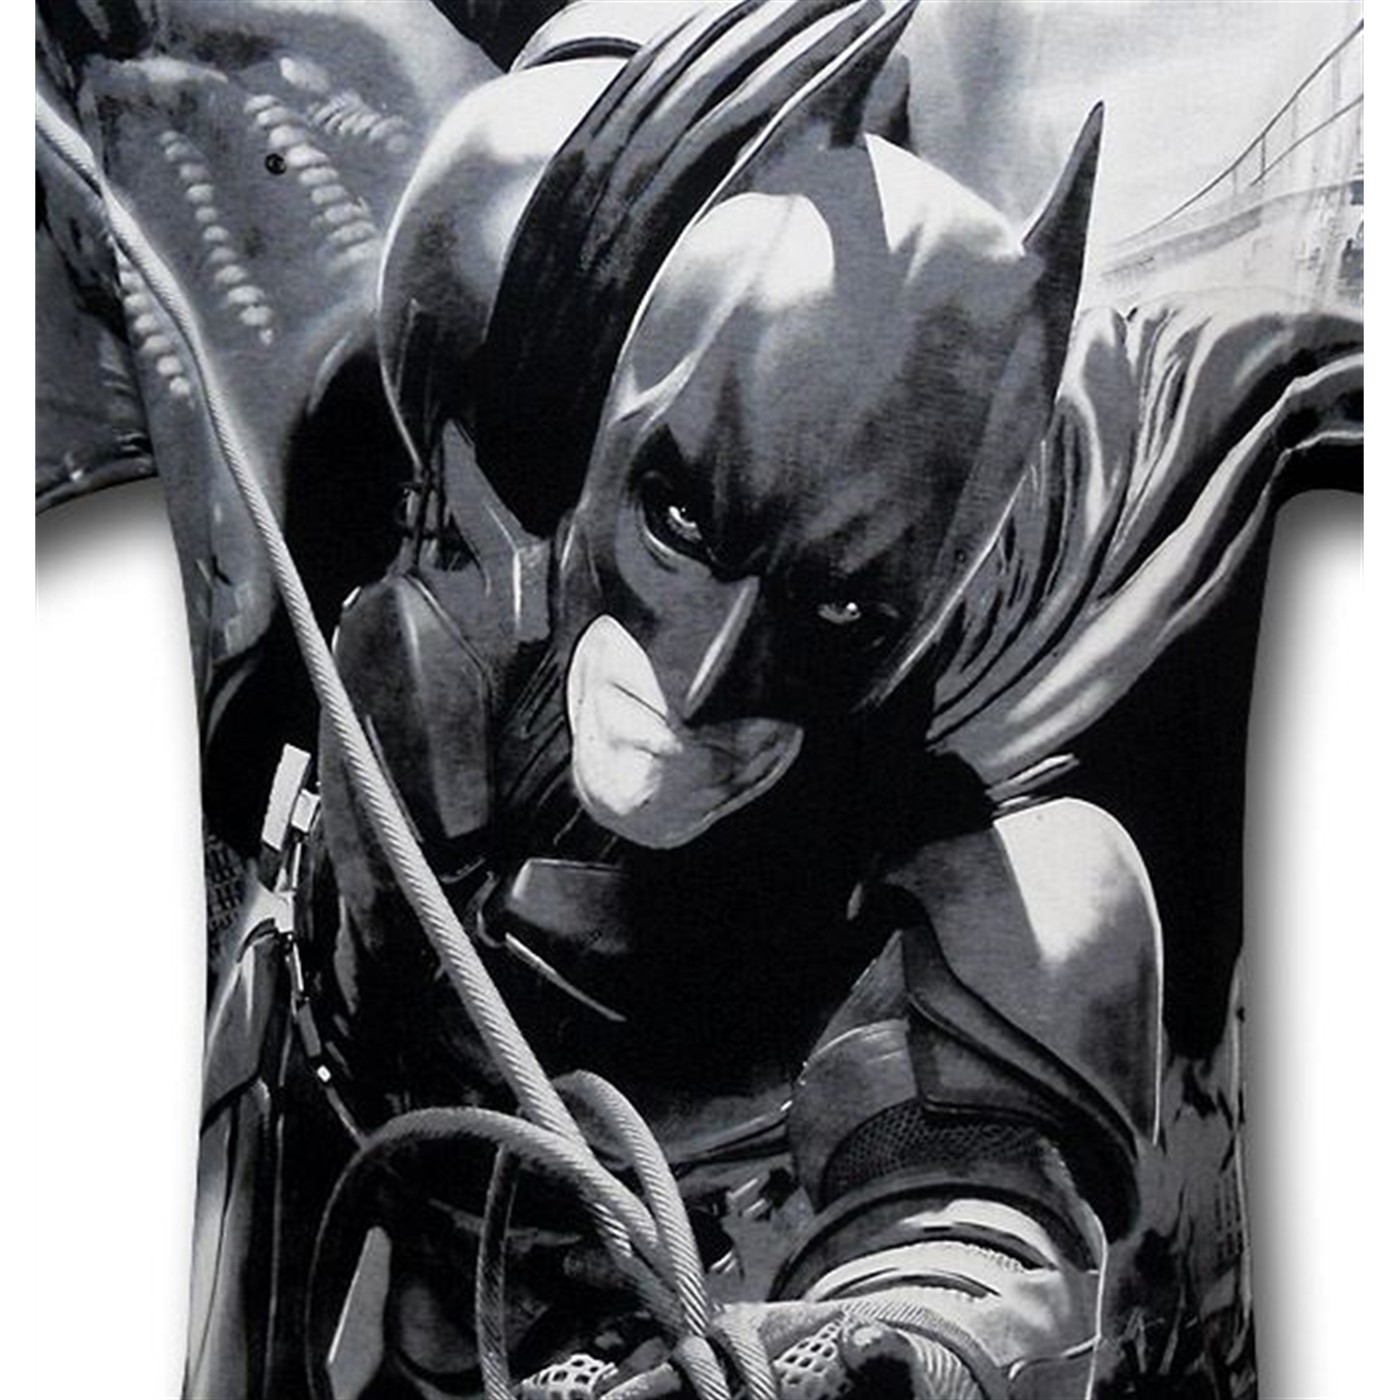 Dark Knight Rises Batman Swing Big Print T-Shirt